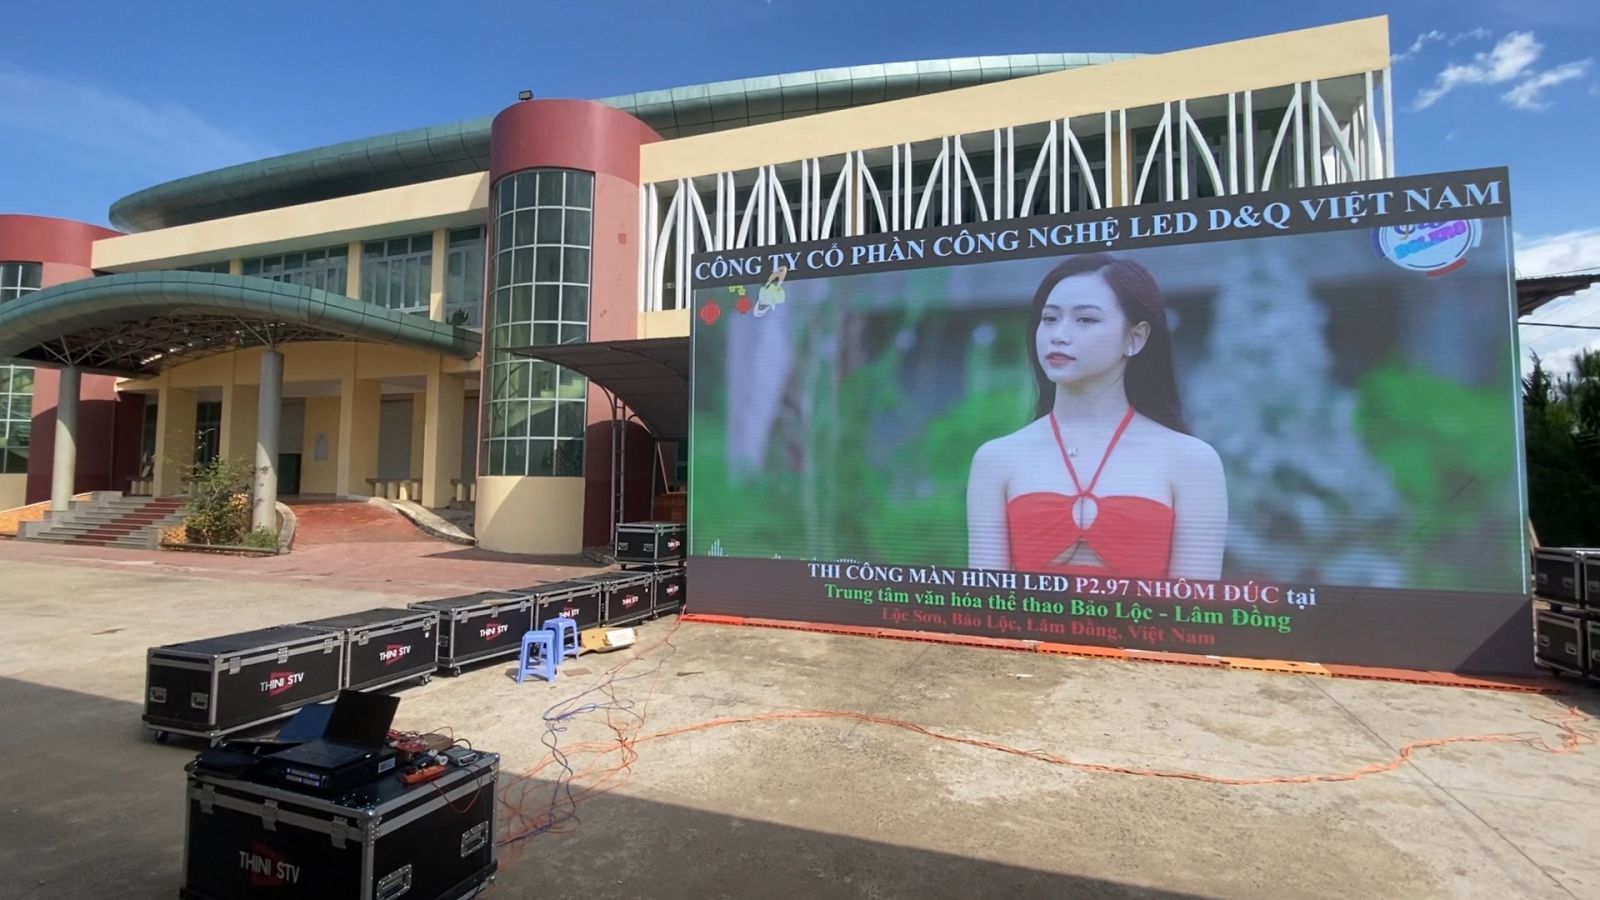 Trung tâm văn hóa thể thao Bảo Lộc | Led D&Q VietNam Thi Công Lắp ghép 30m2 Cabinh Nhôm đúc P2.97.